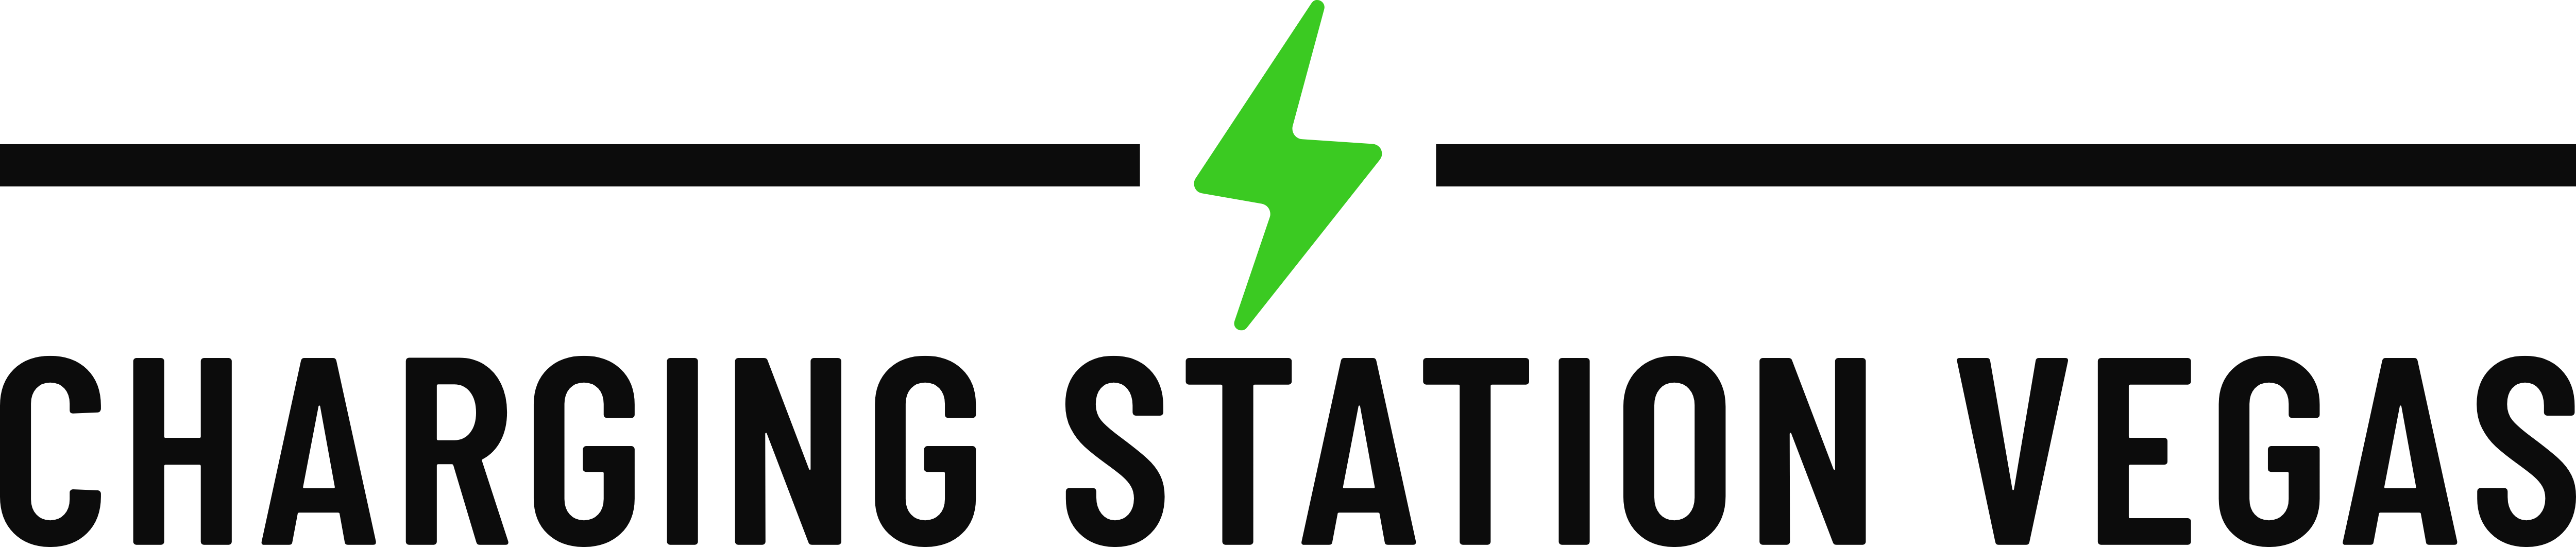 Charging Station Vegas Logo